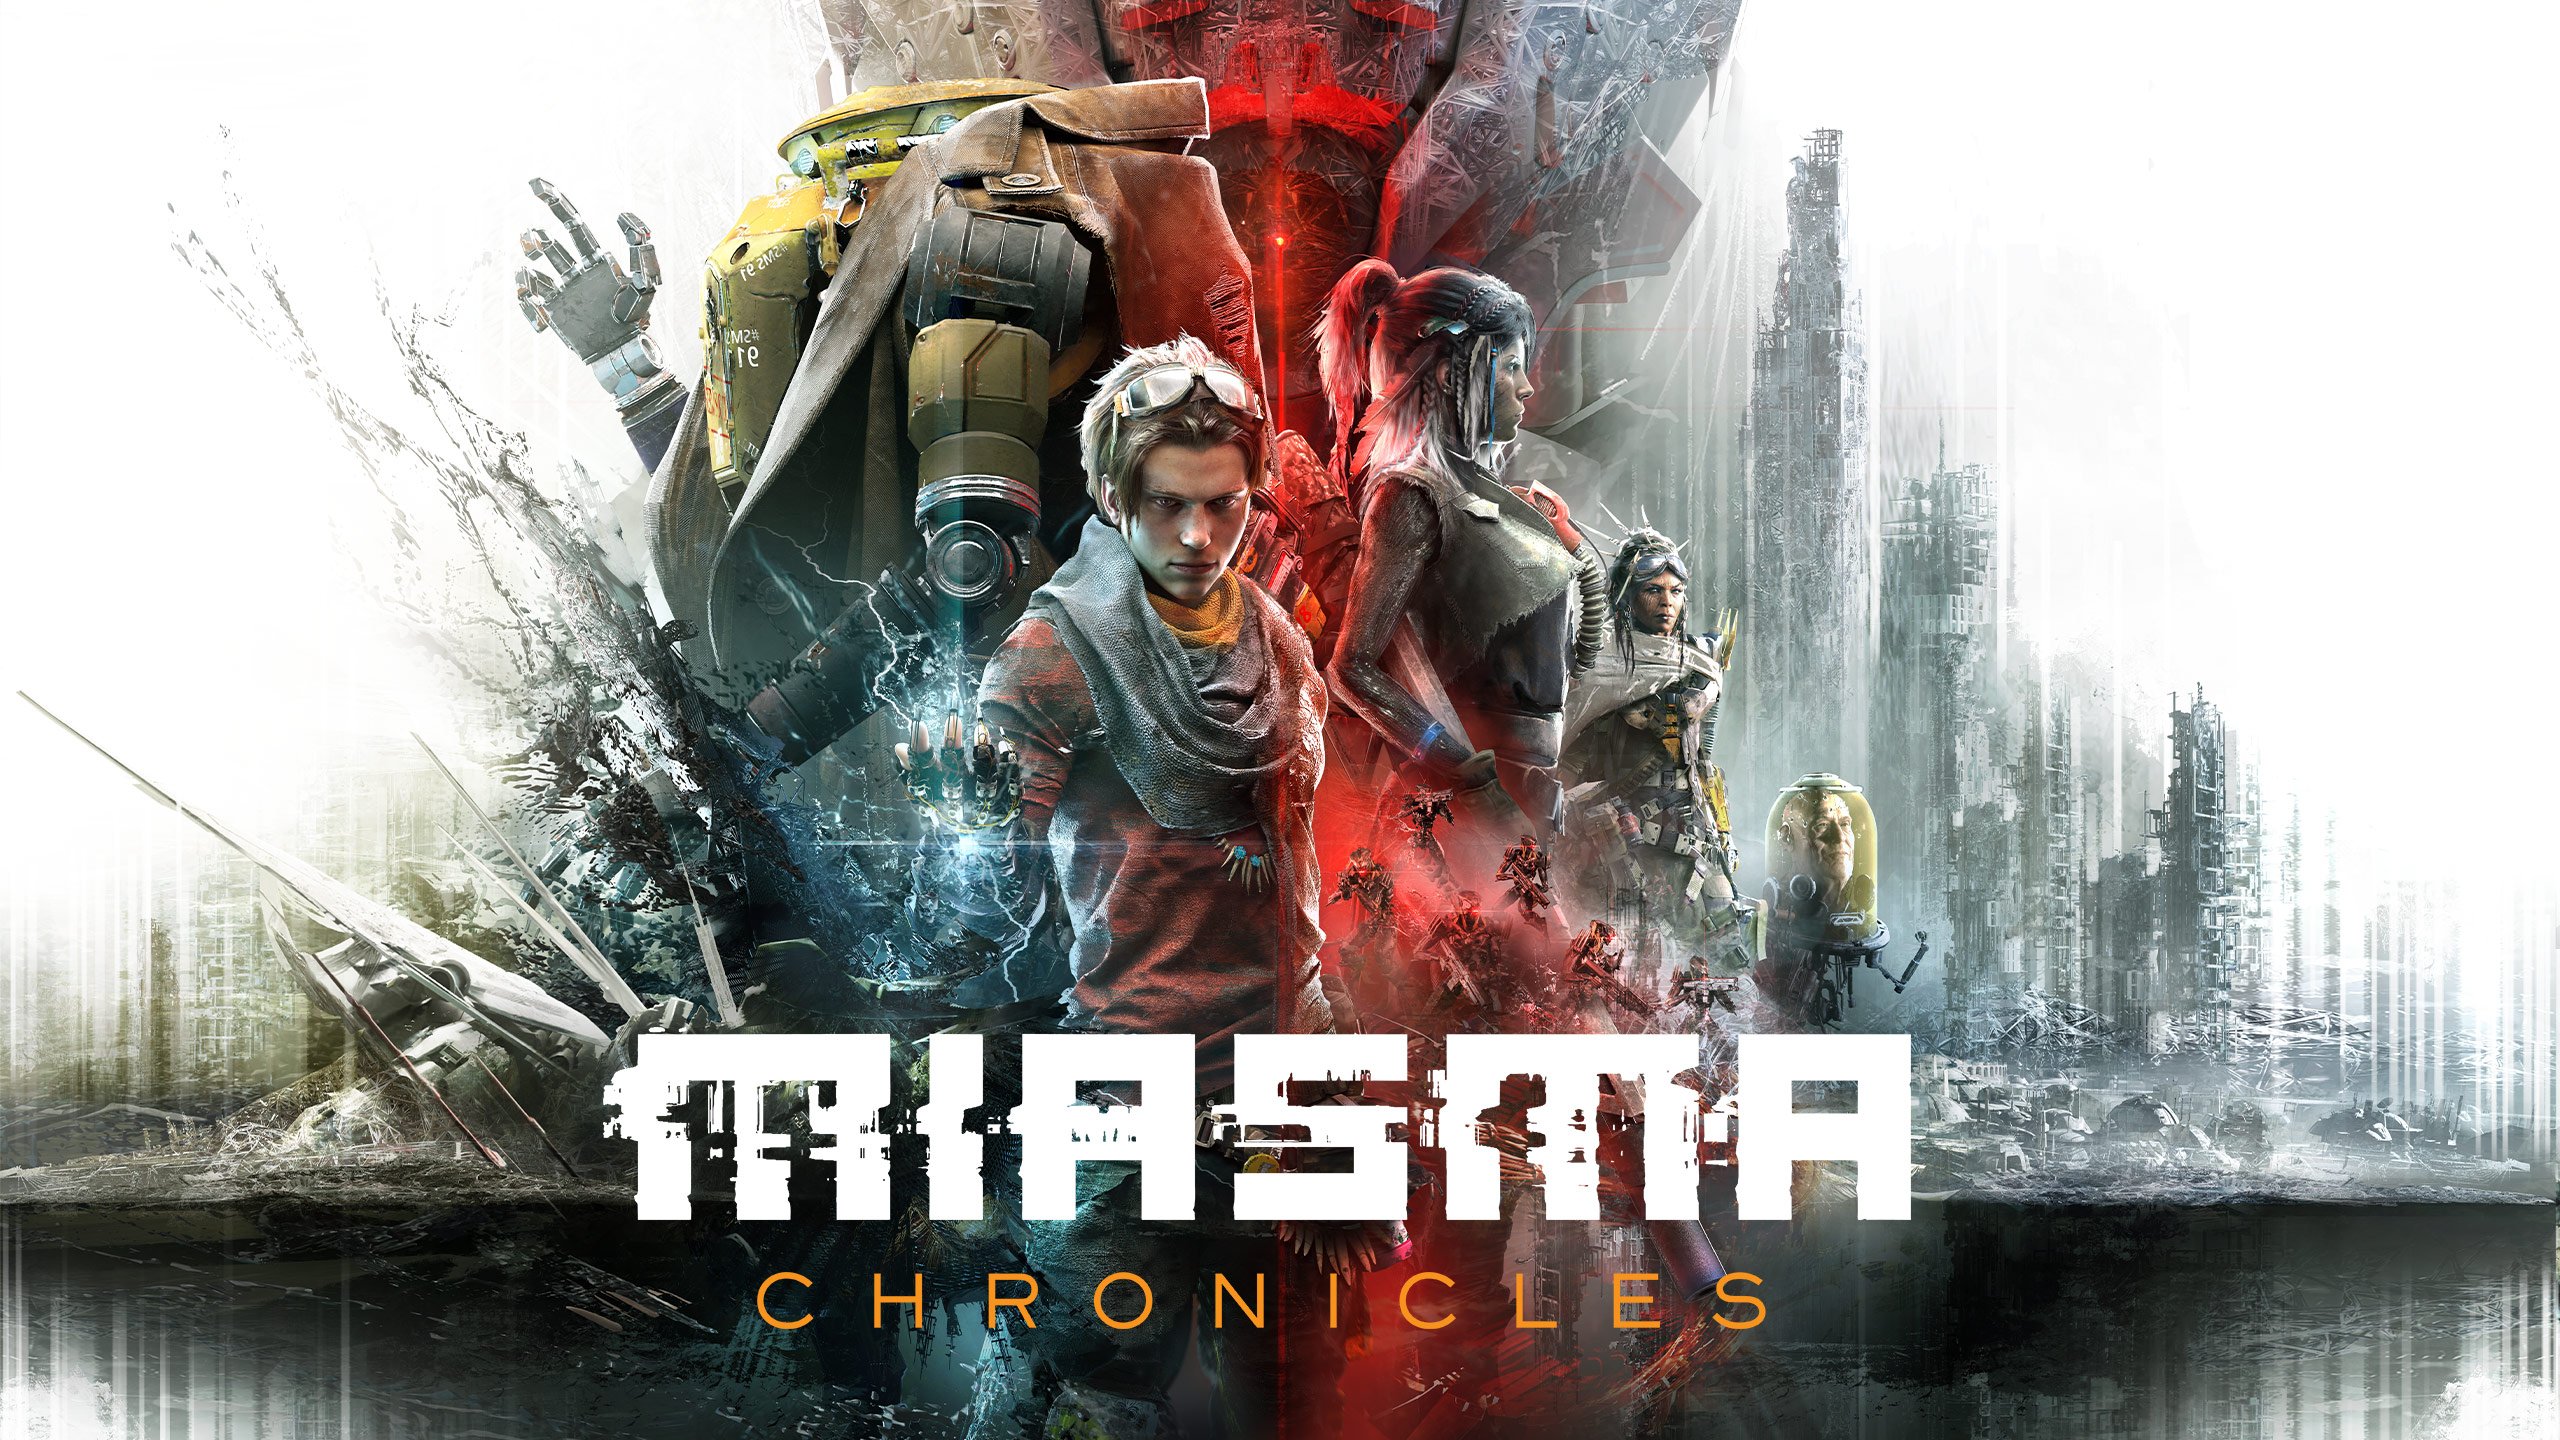 Miasma Chronicles Release